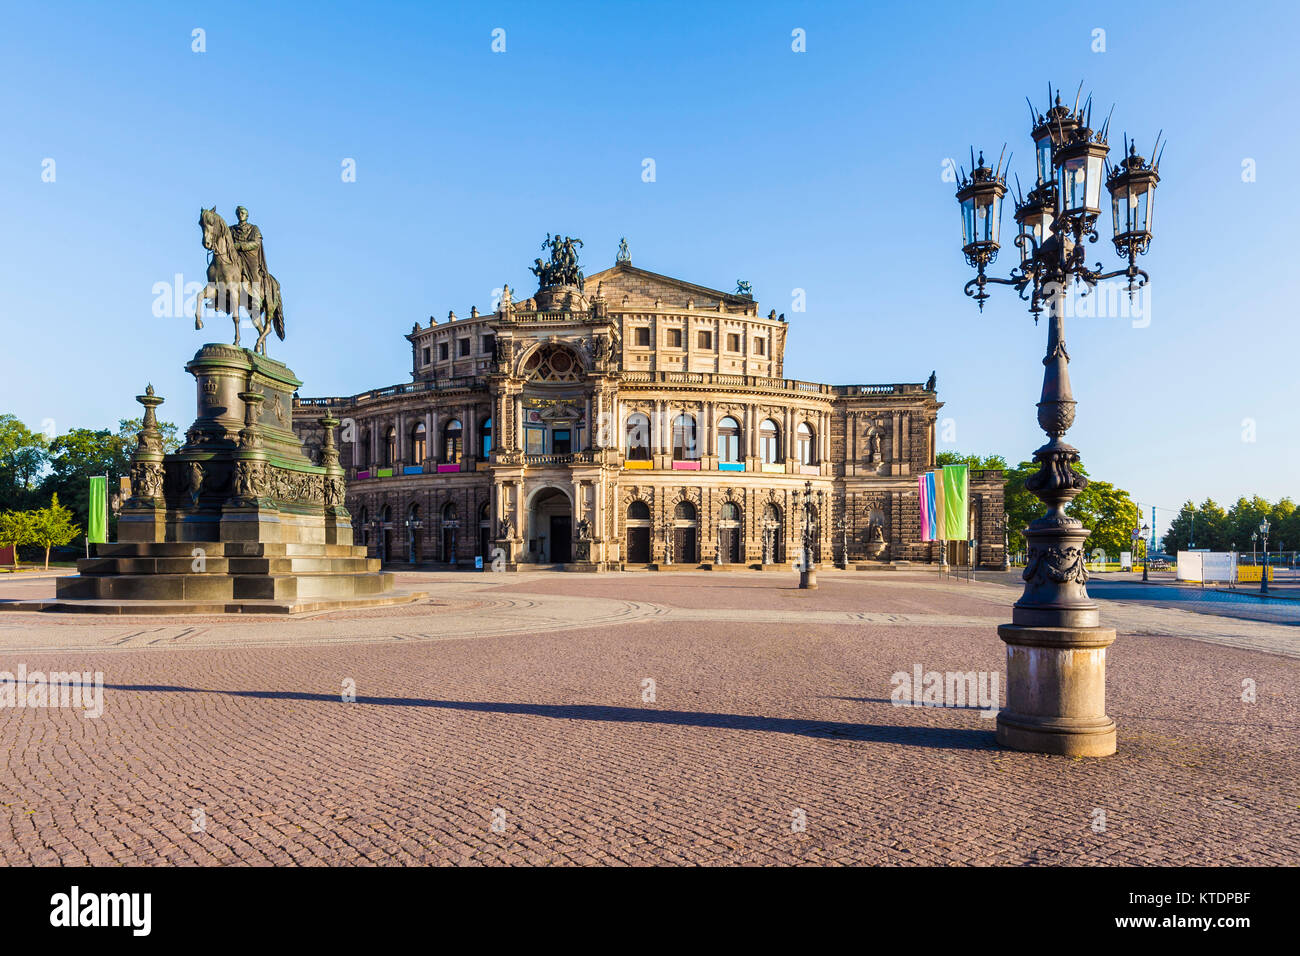 Deutschland, Sachsen, Dresda, Theaterplatz, Semperoper, Oper, Opernhaus Foto Stock